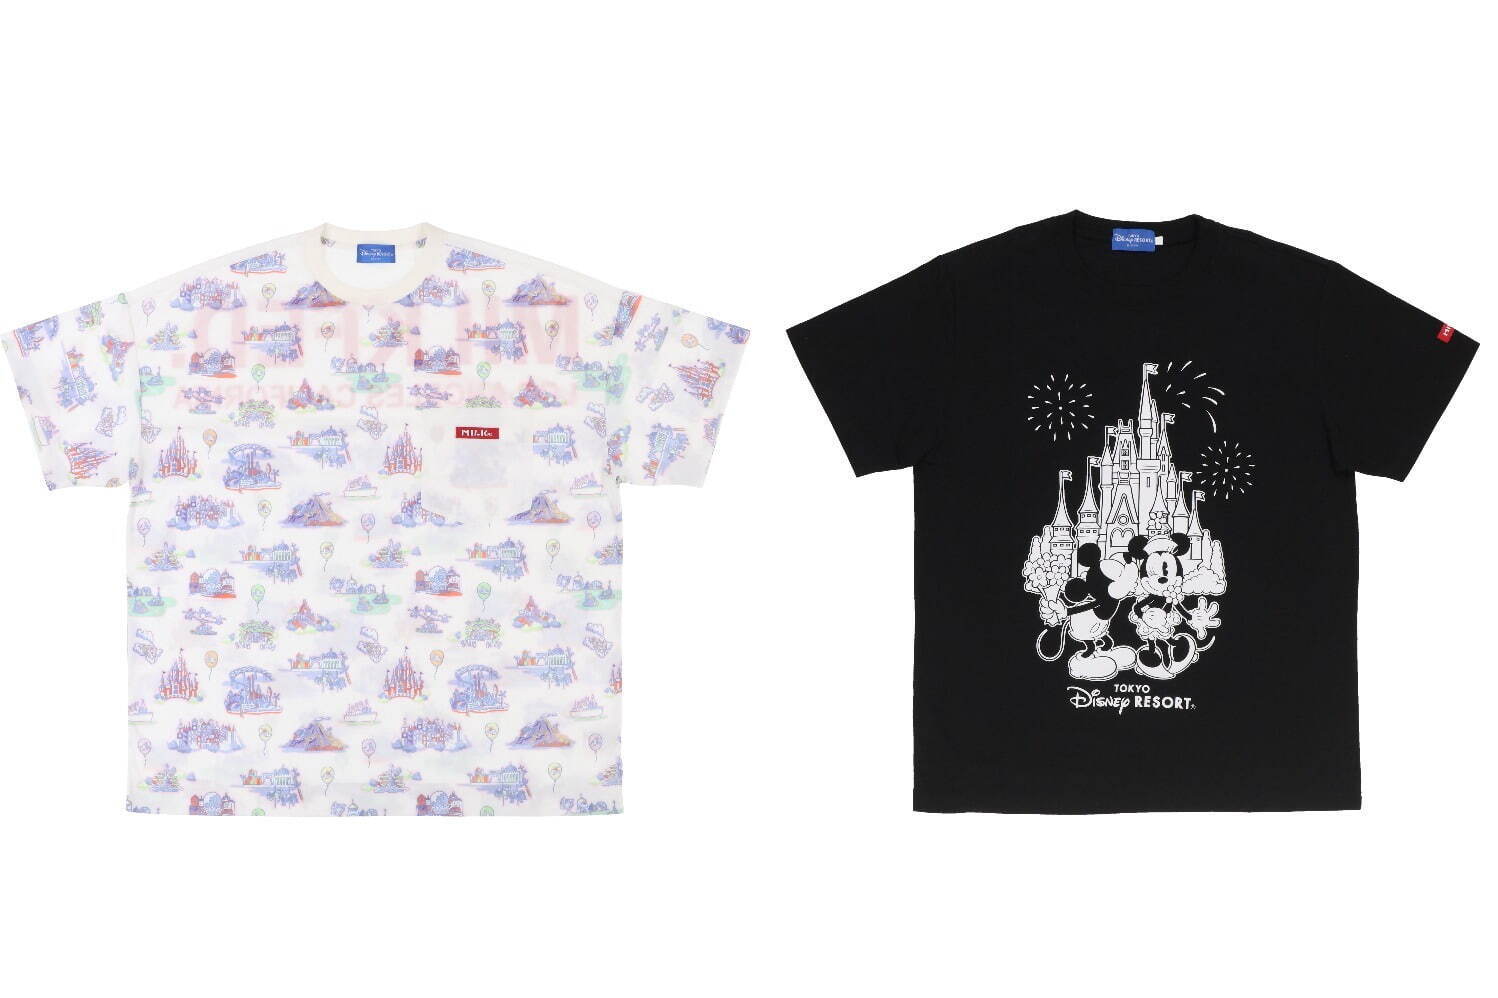 左から)Tシャツ〈MILKFED.〉8,500円、 5,500円